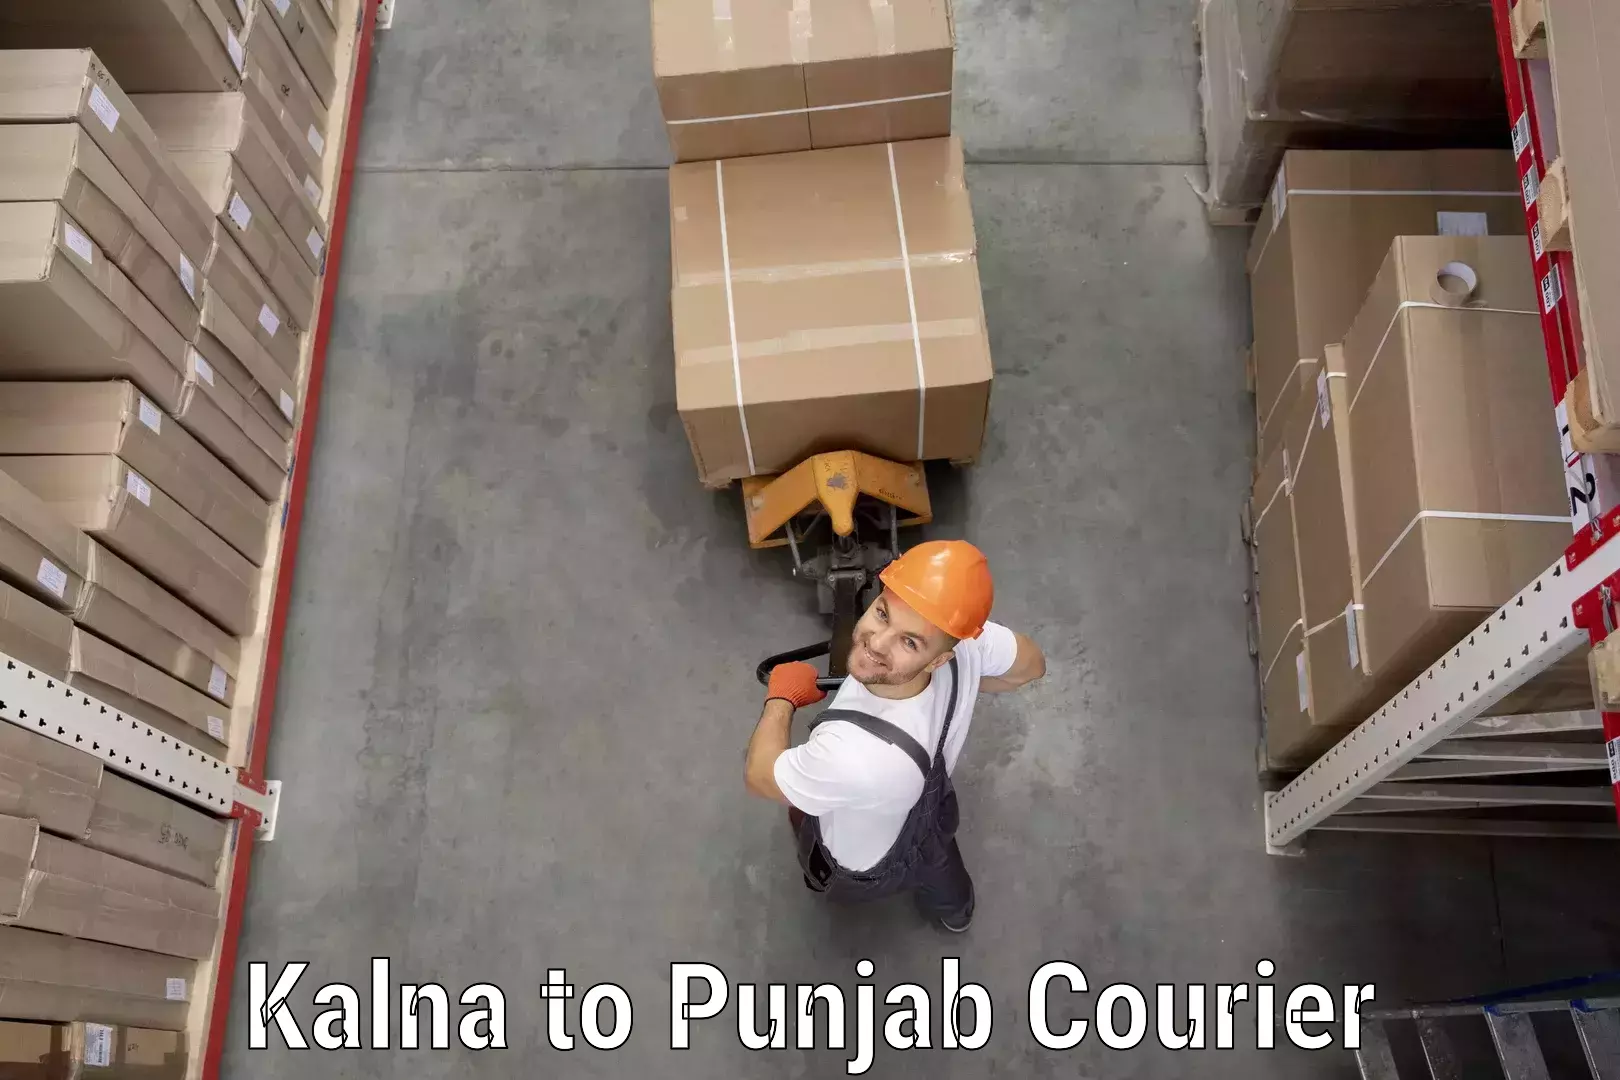 Specialized shipment handling Kalna to Jalandhar